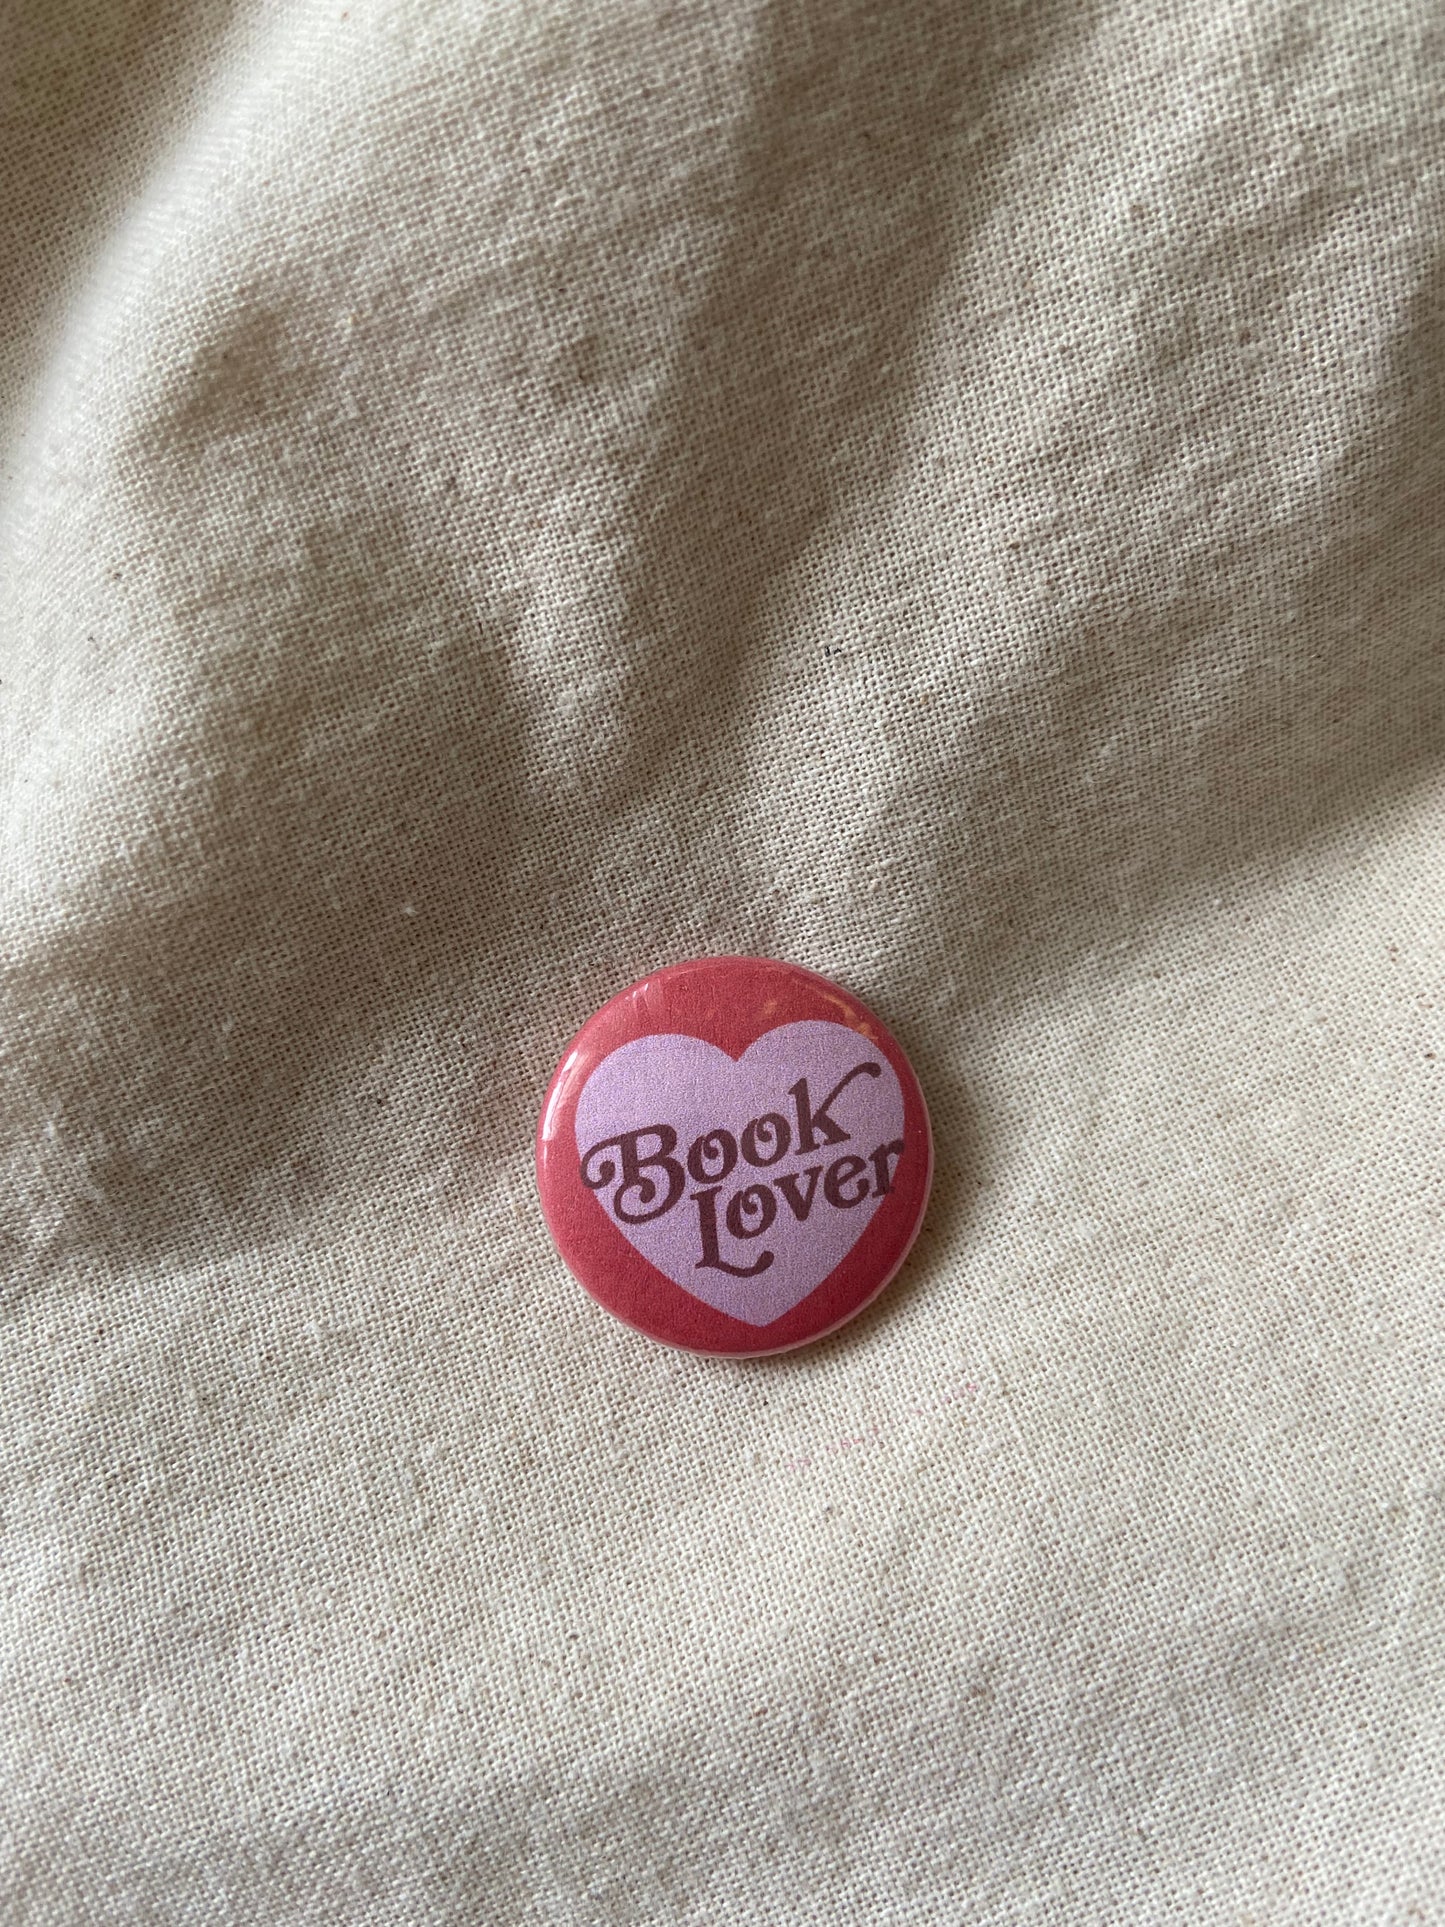 Book Lover Button Pin 1"